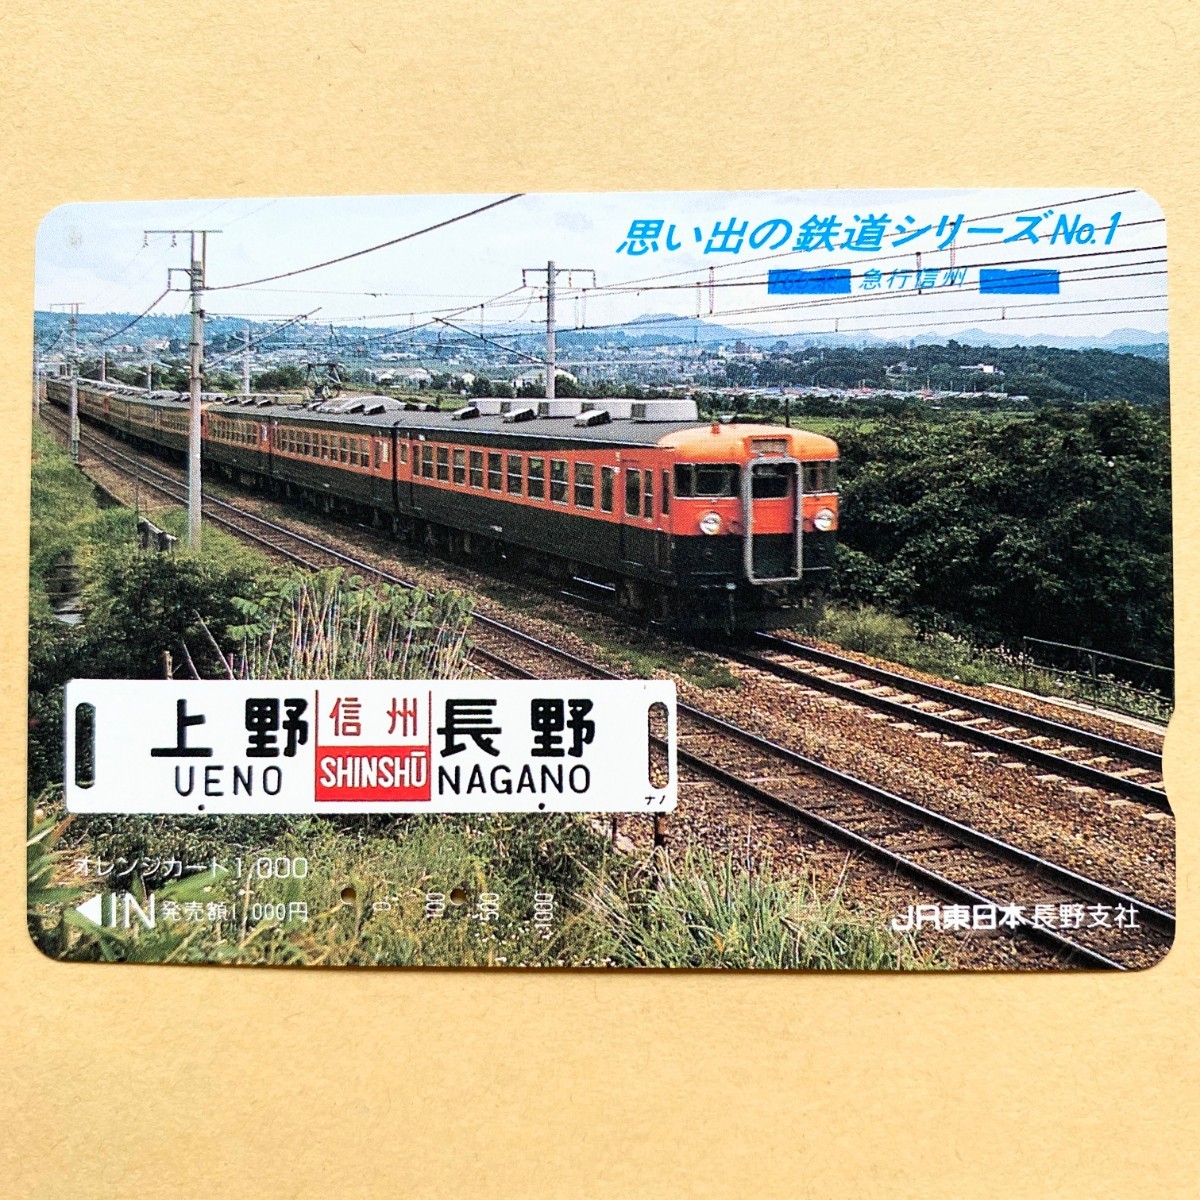 【使用済】 オレンジカード JR東日本 思い出の鉄道シリーズNo.1 165系 急行信州の画像1